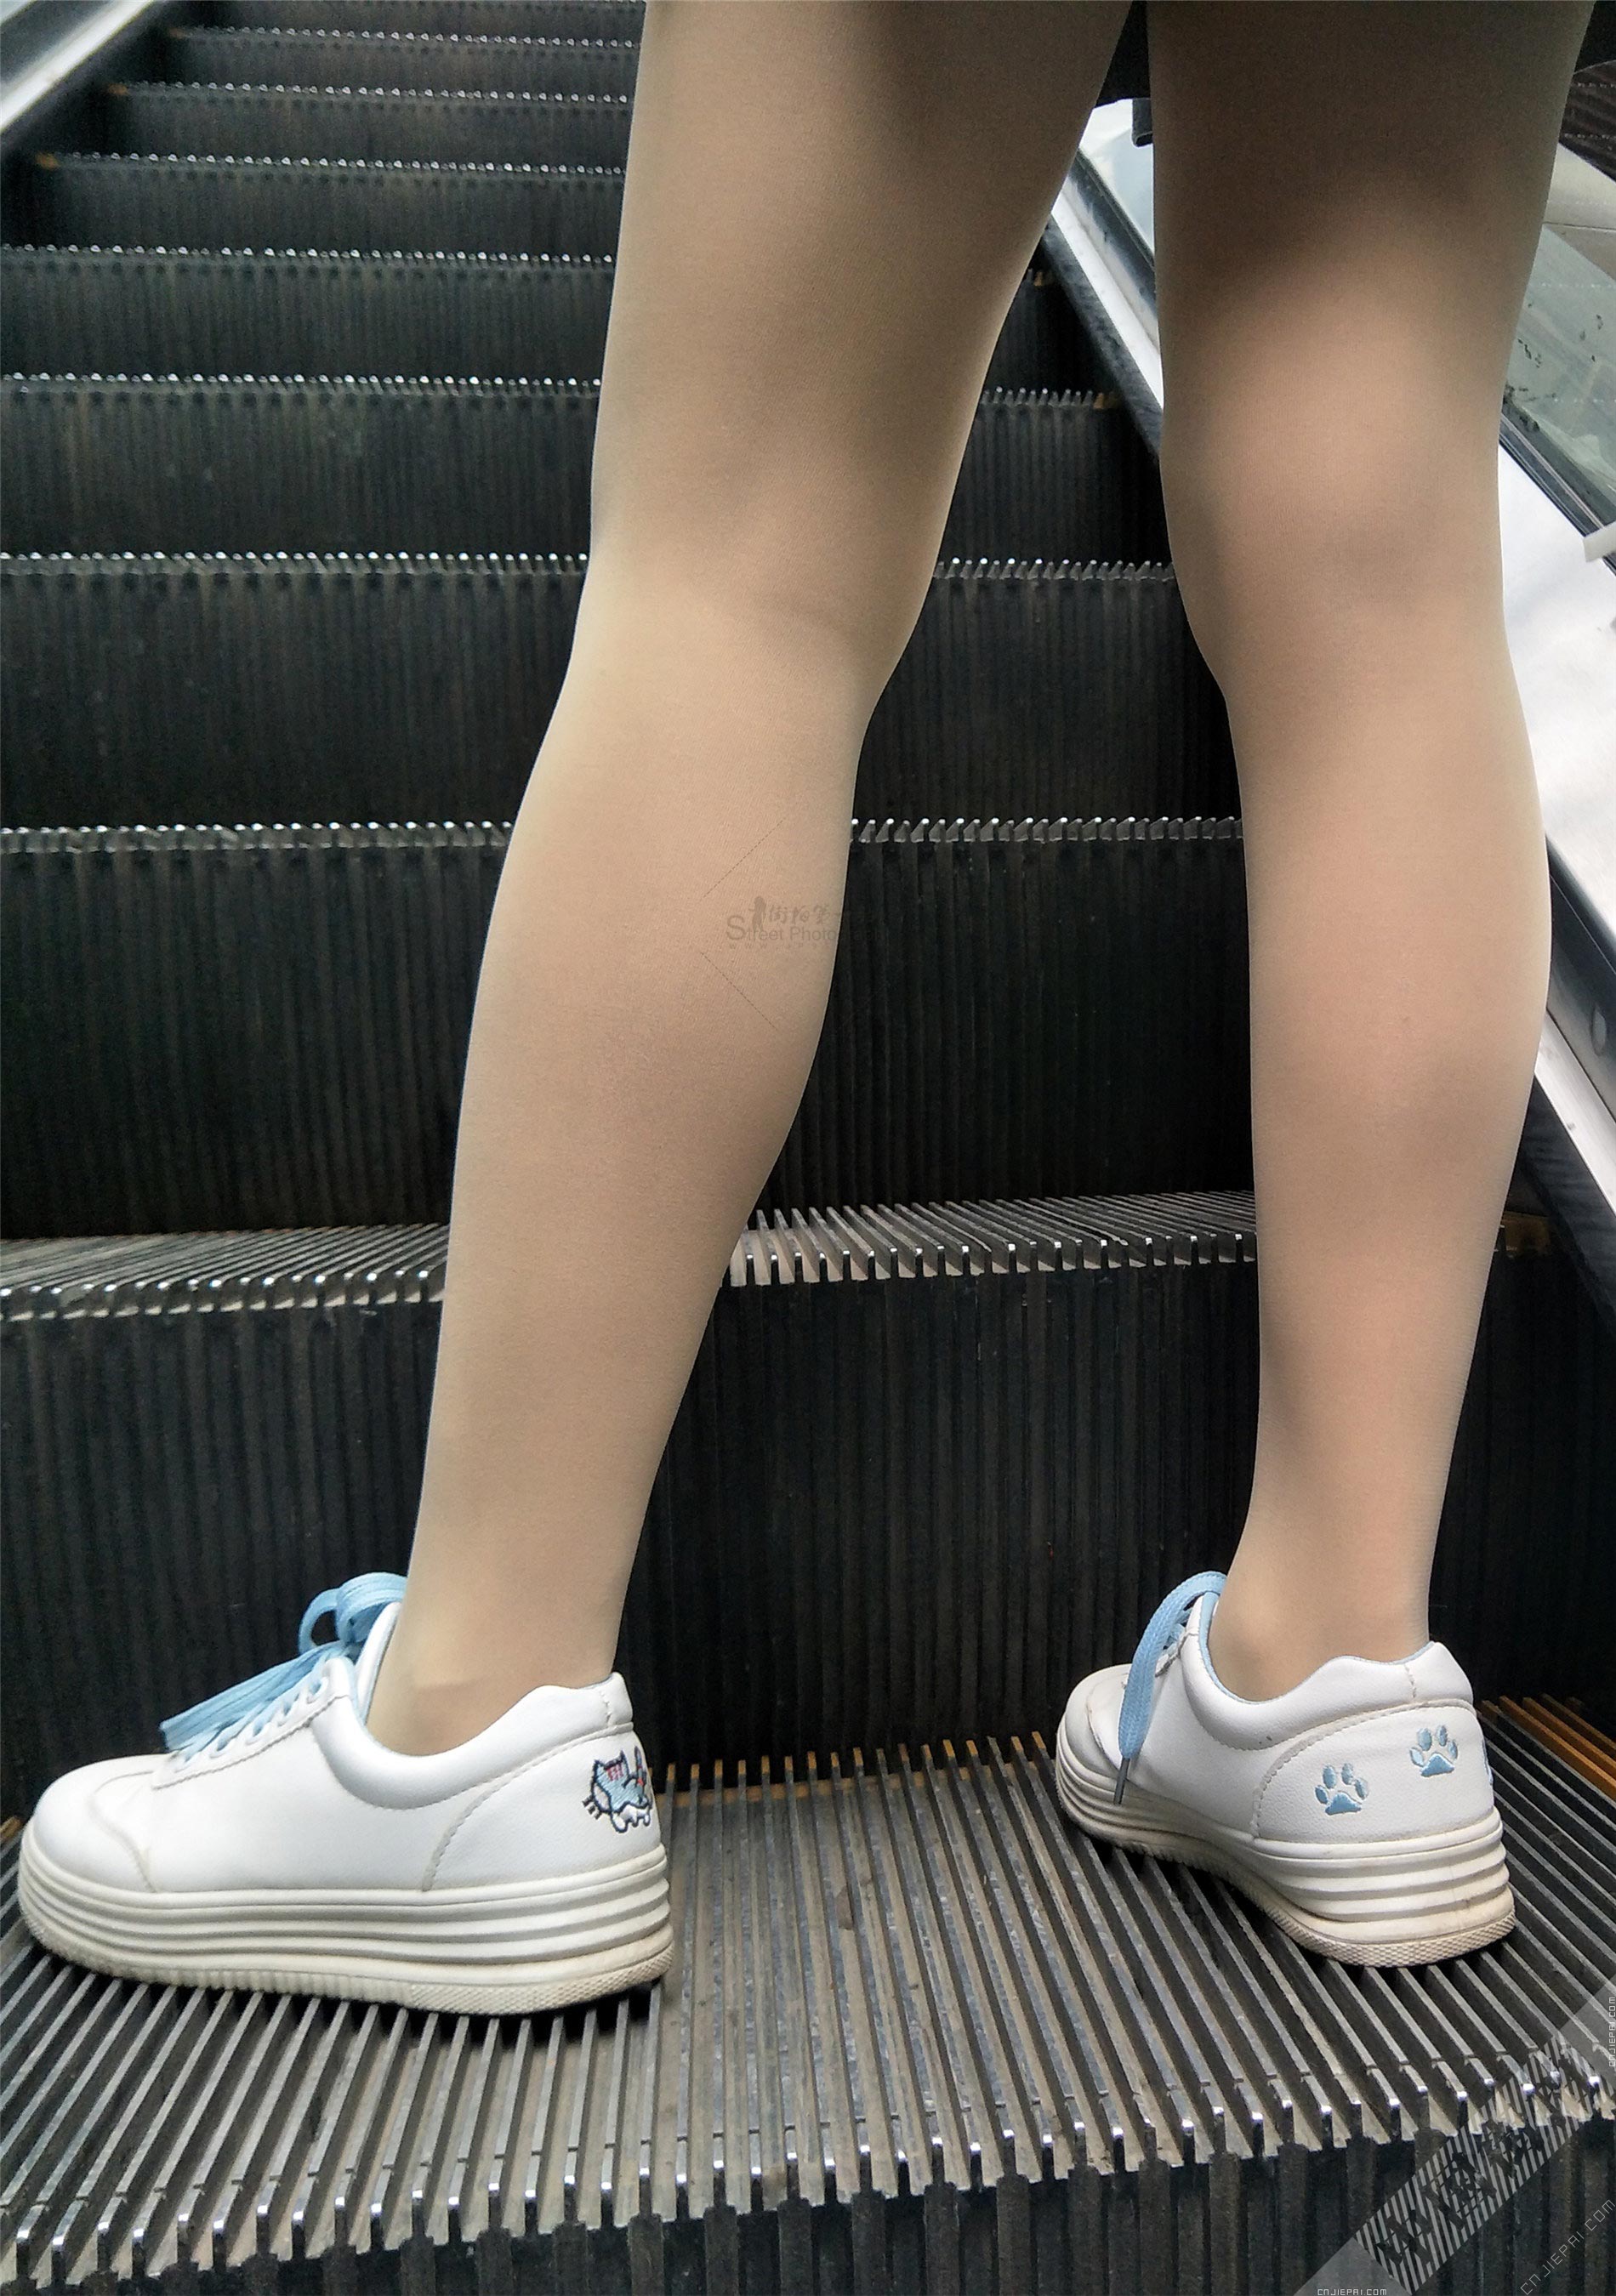 自动扶梯上的短裙肤色裤袜美女 图7